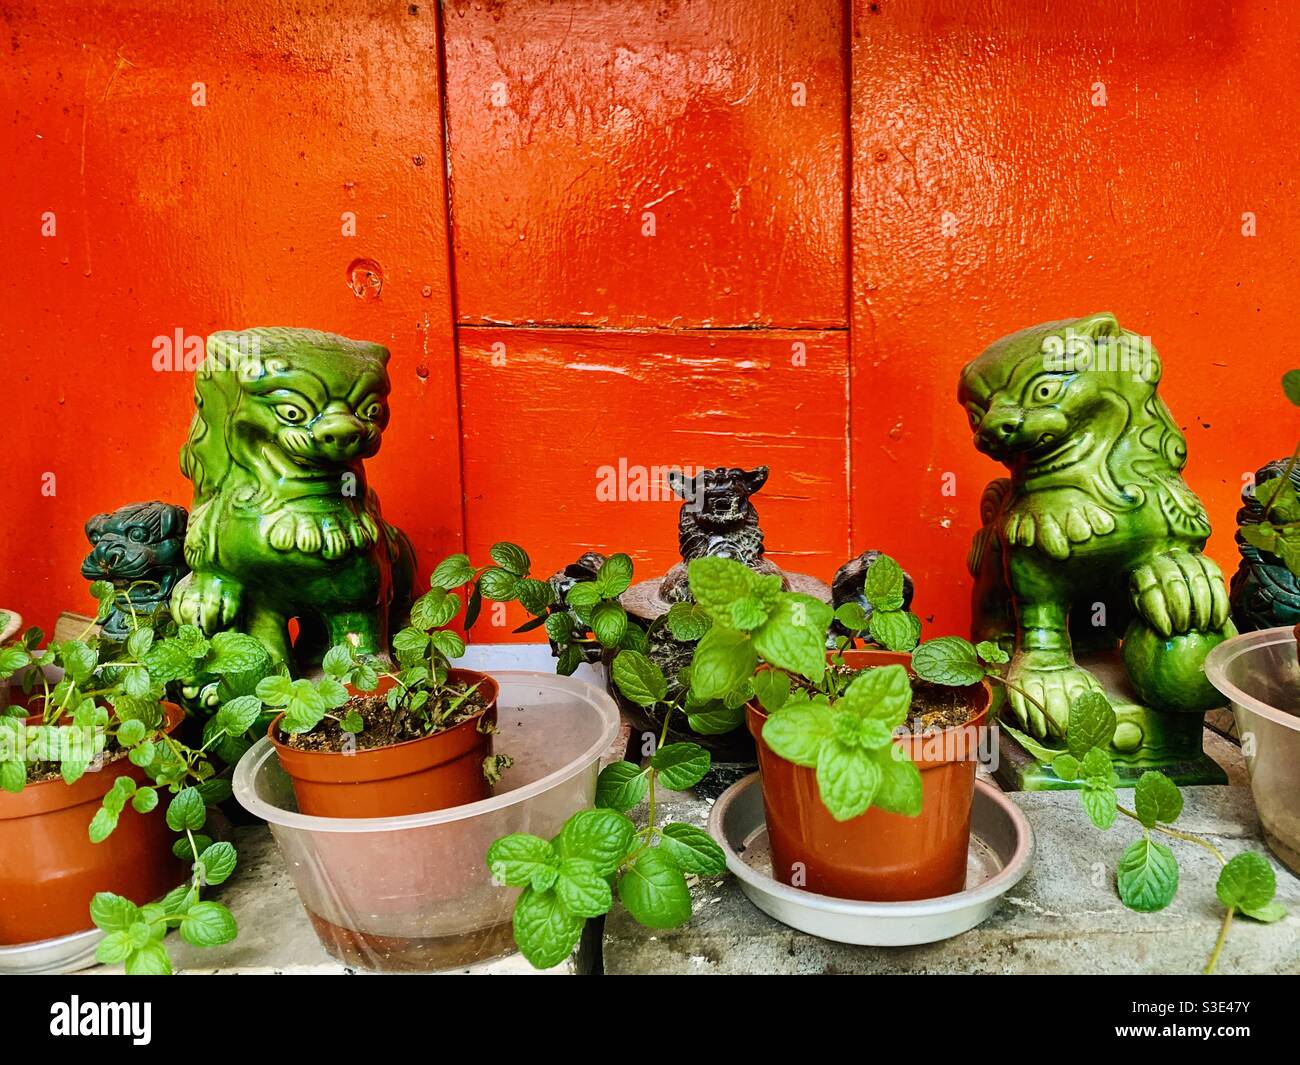 Chinese guardian lions ( Fu dogs ) outside the Hung Shing temple in Ap lei chau, Hong Kong. Stock Photo